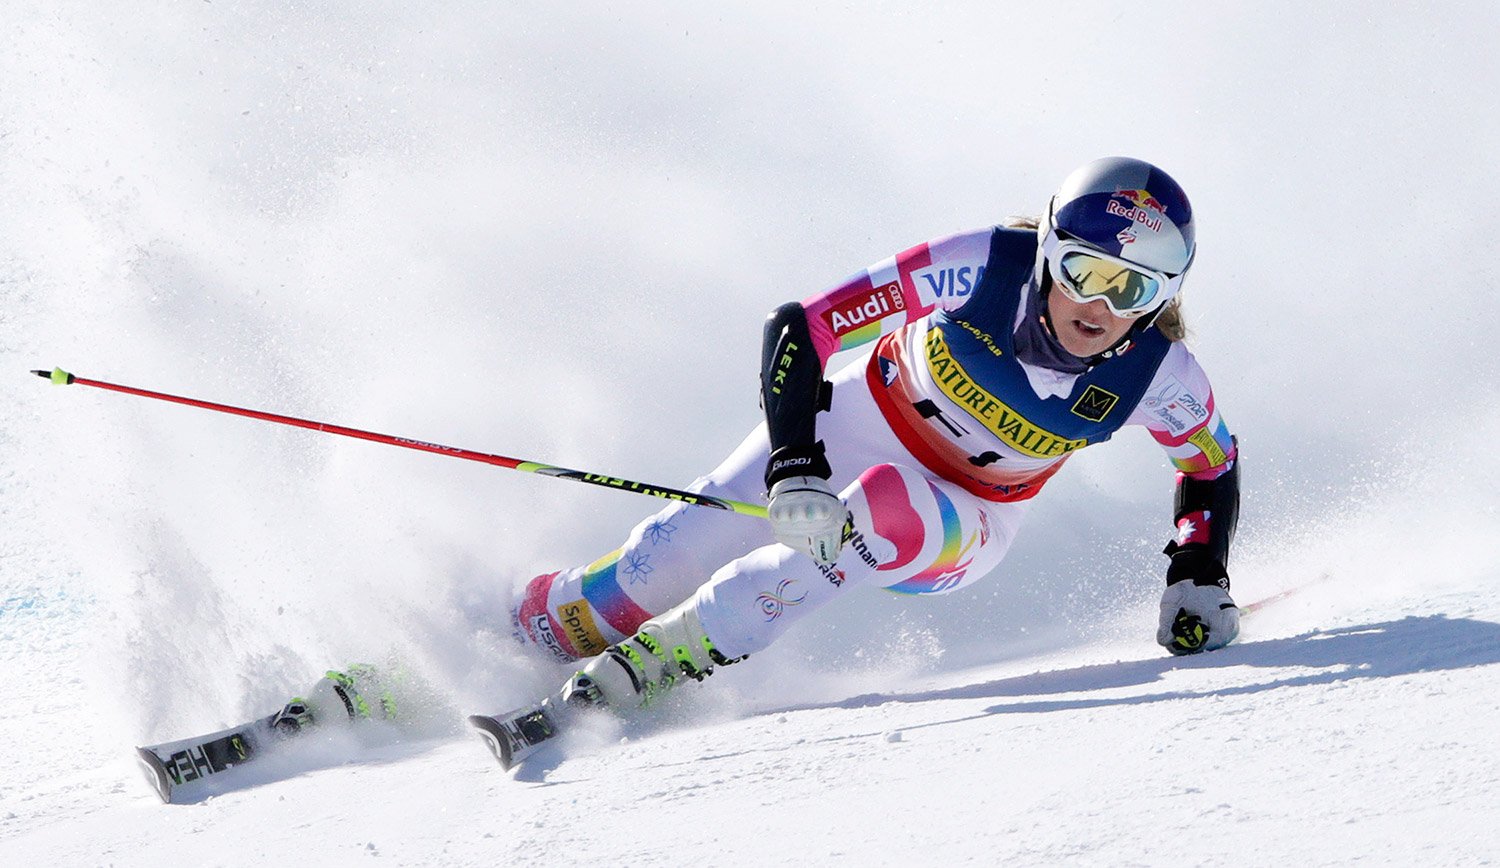 Лыжи для слалома. Лыжный спорт слалом. Giant Slalom лыжный спорт. Френи Шнайдер горнолыжница. Манкузо горнолыжница.